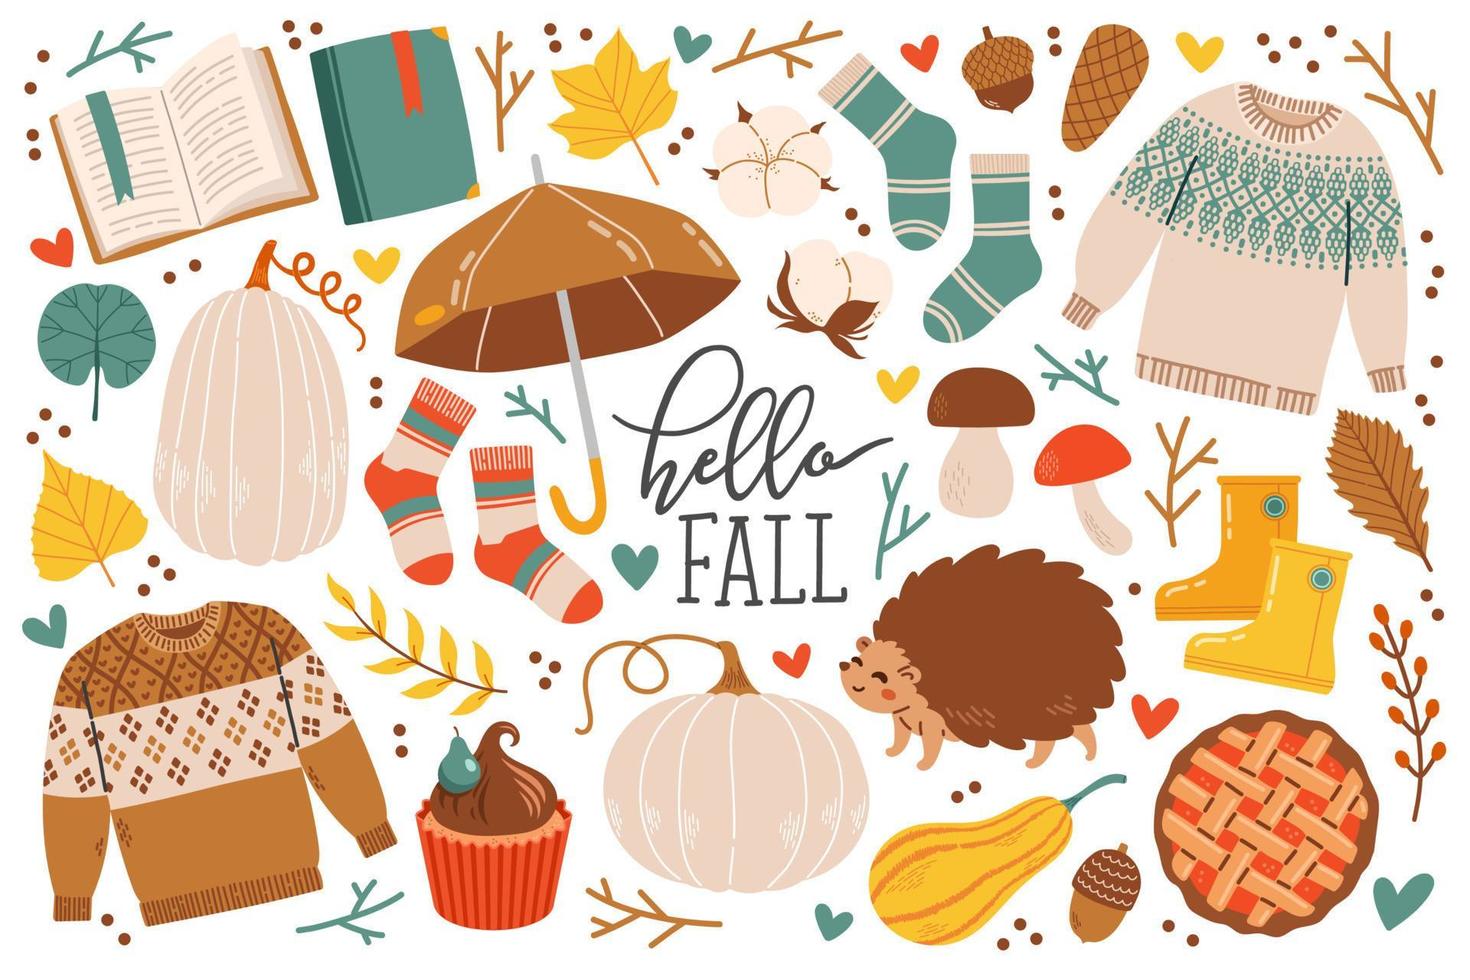 ícones de outono definem folhas caindo, abóboras, suéter, animais fofos, meias, guirlanda floral. elementos da temporada de outono perfeitos para scrapbook, cartão, pôster, convite, kit de adesivos. ilustração vetorial. vetor